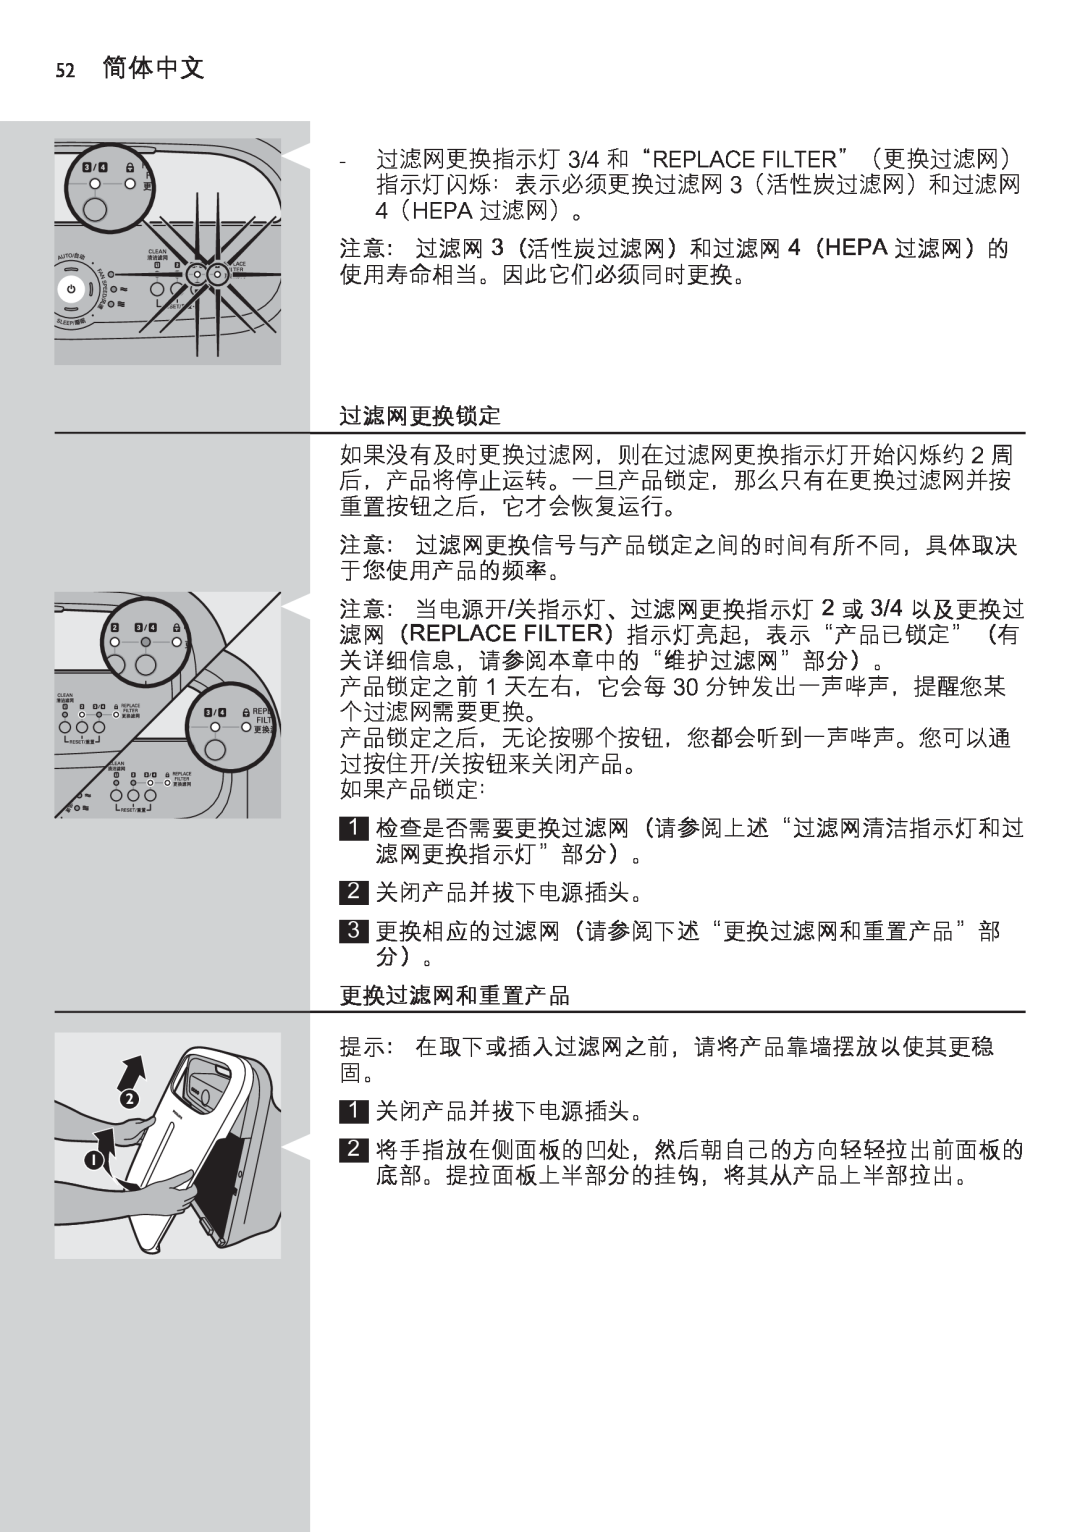 Philips AC4002 manual 52 简体中文, 过滤网更换锁定, 更换过滤网和重置产品 